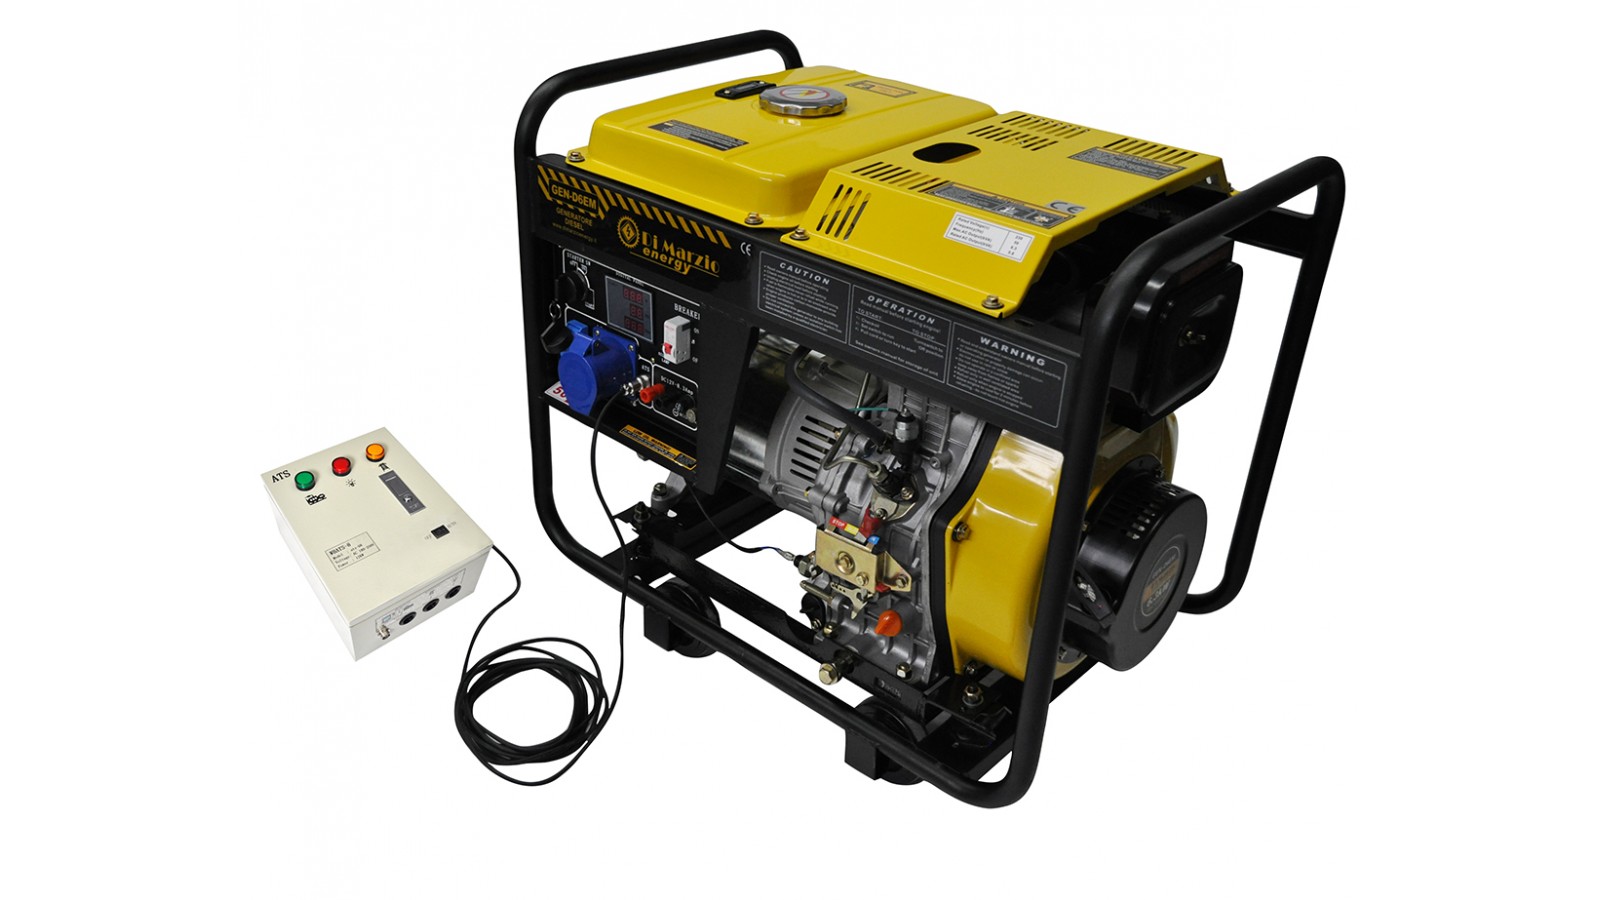 Generatore di corrente 6 kw diesel - gruppo elettrogeno avviamento elettrico - sistema ATS